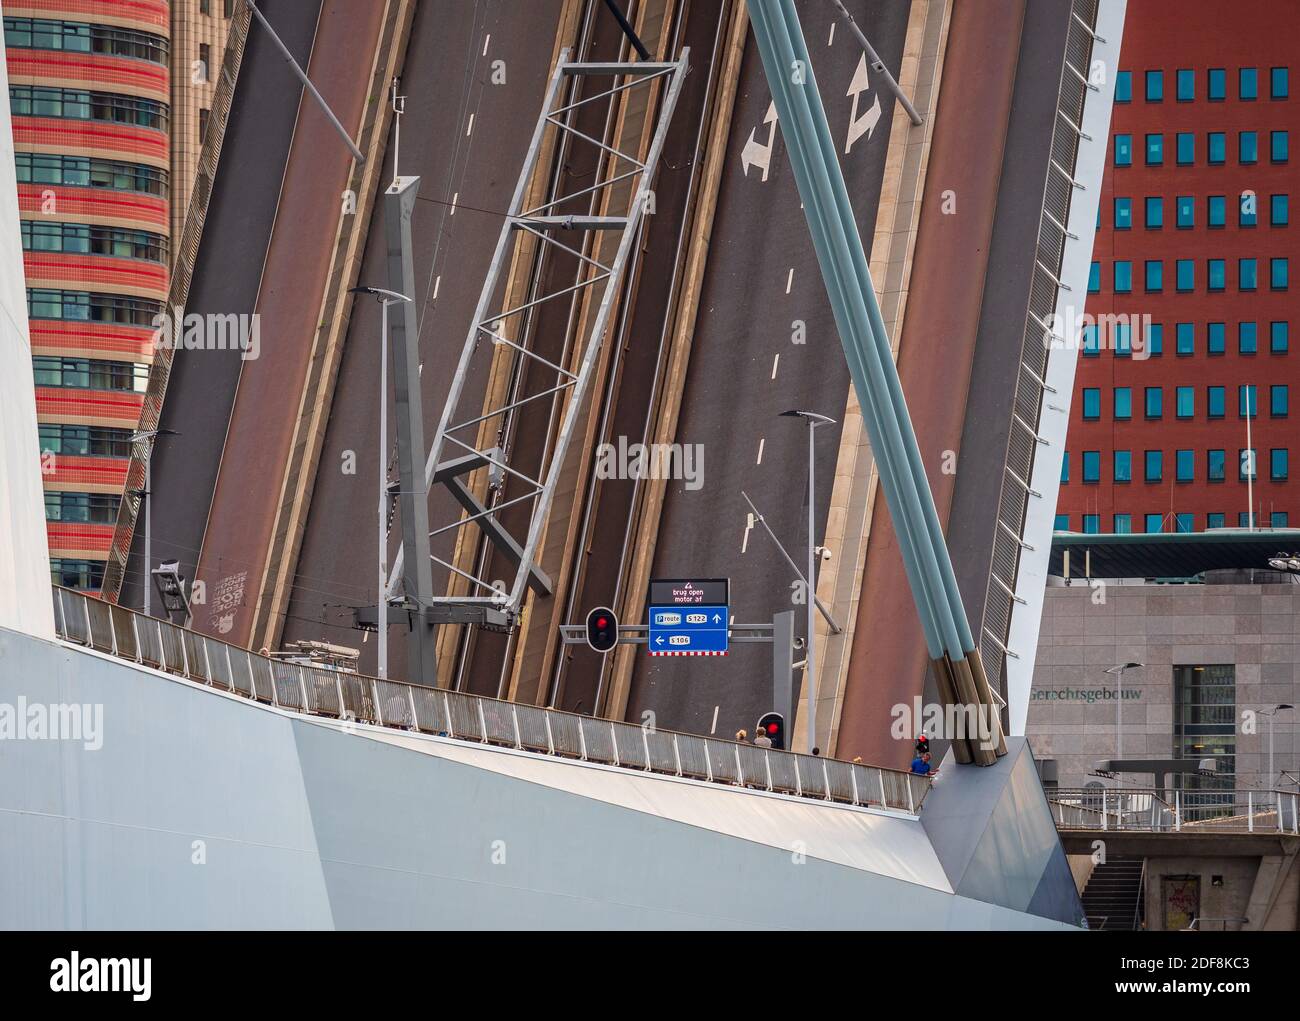 Erasmus-Brücke Rotterdam erhöht - die Bascule-Brücke Abschnitt der Erasmus-Brücke angehoben, um große Schifffahrt auf der Maas oder Maas Fluss zu ermöglichen. Stockfoto